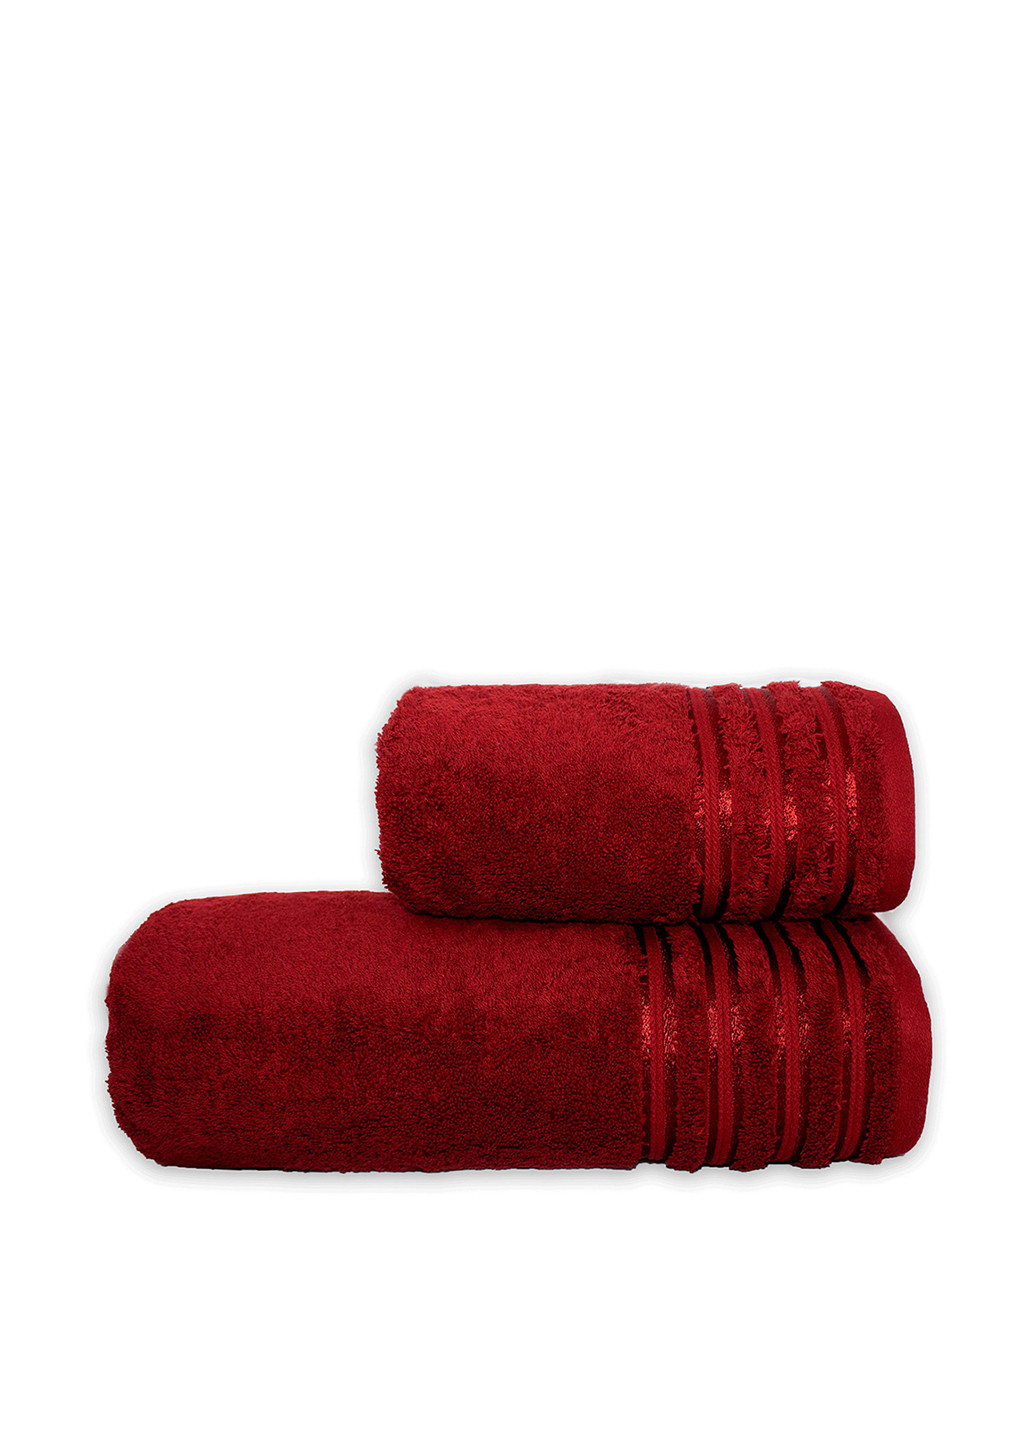 Vip Hotel Collection полотенце, 50х90 см однотонный бордовый производство - Турция